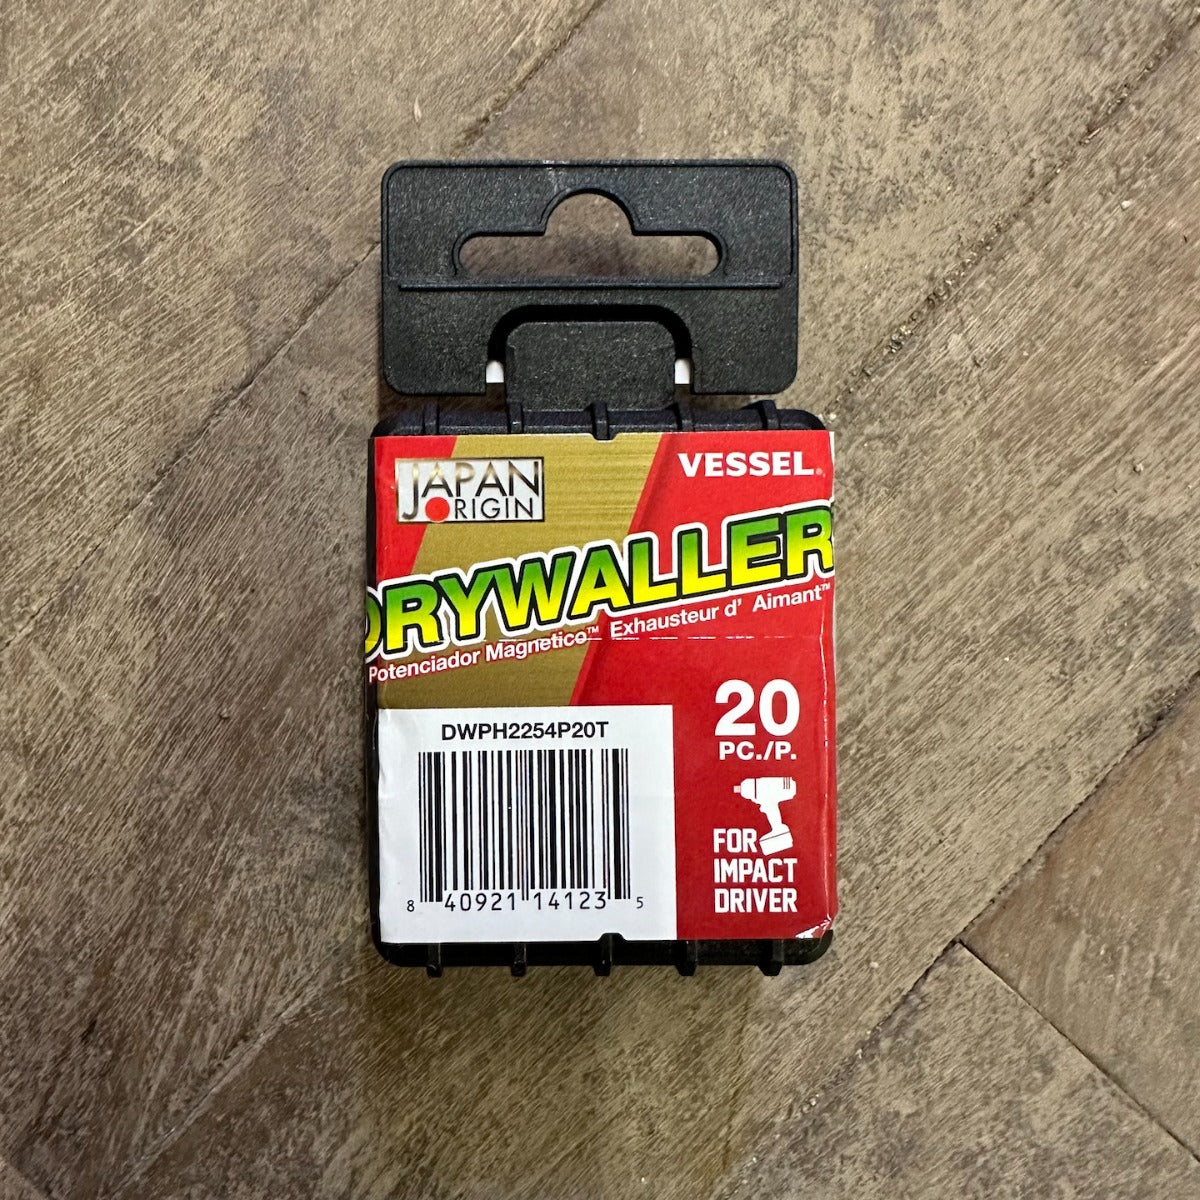 Vessel Drywaller Insert Bits PH2 - 20 Pack (DWPH2254P20T)